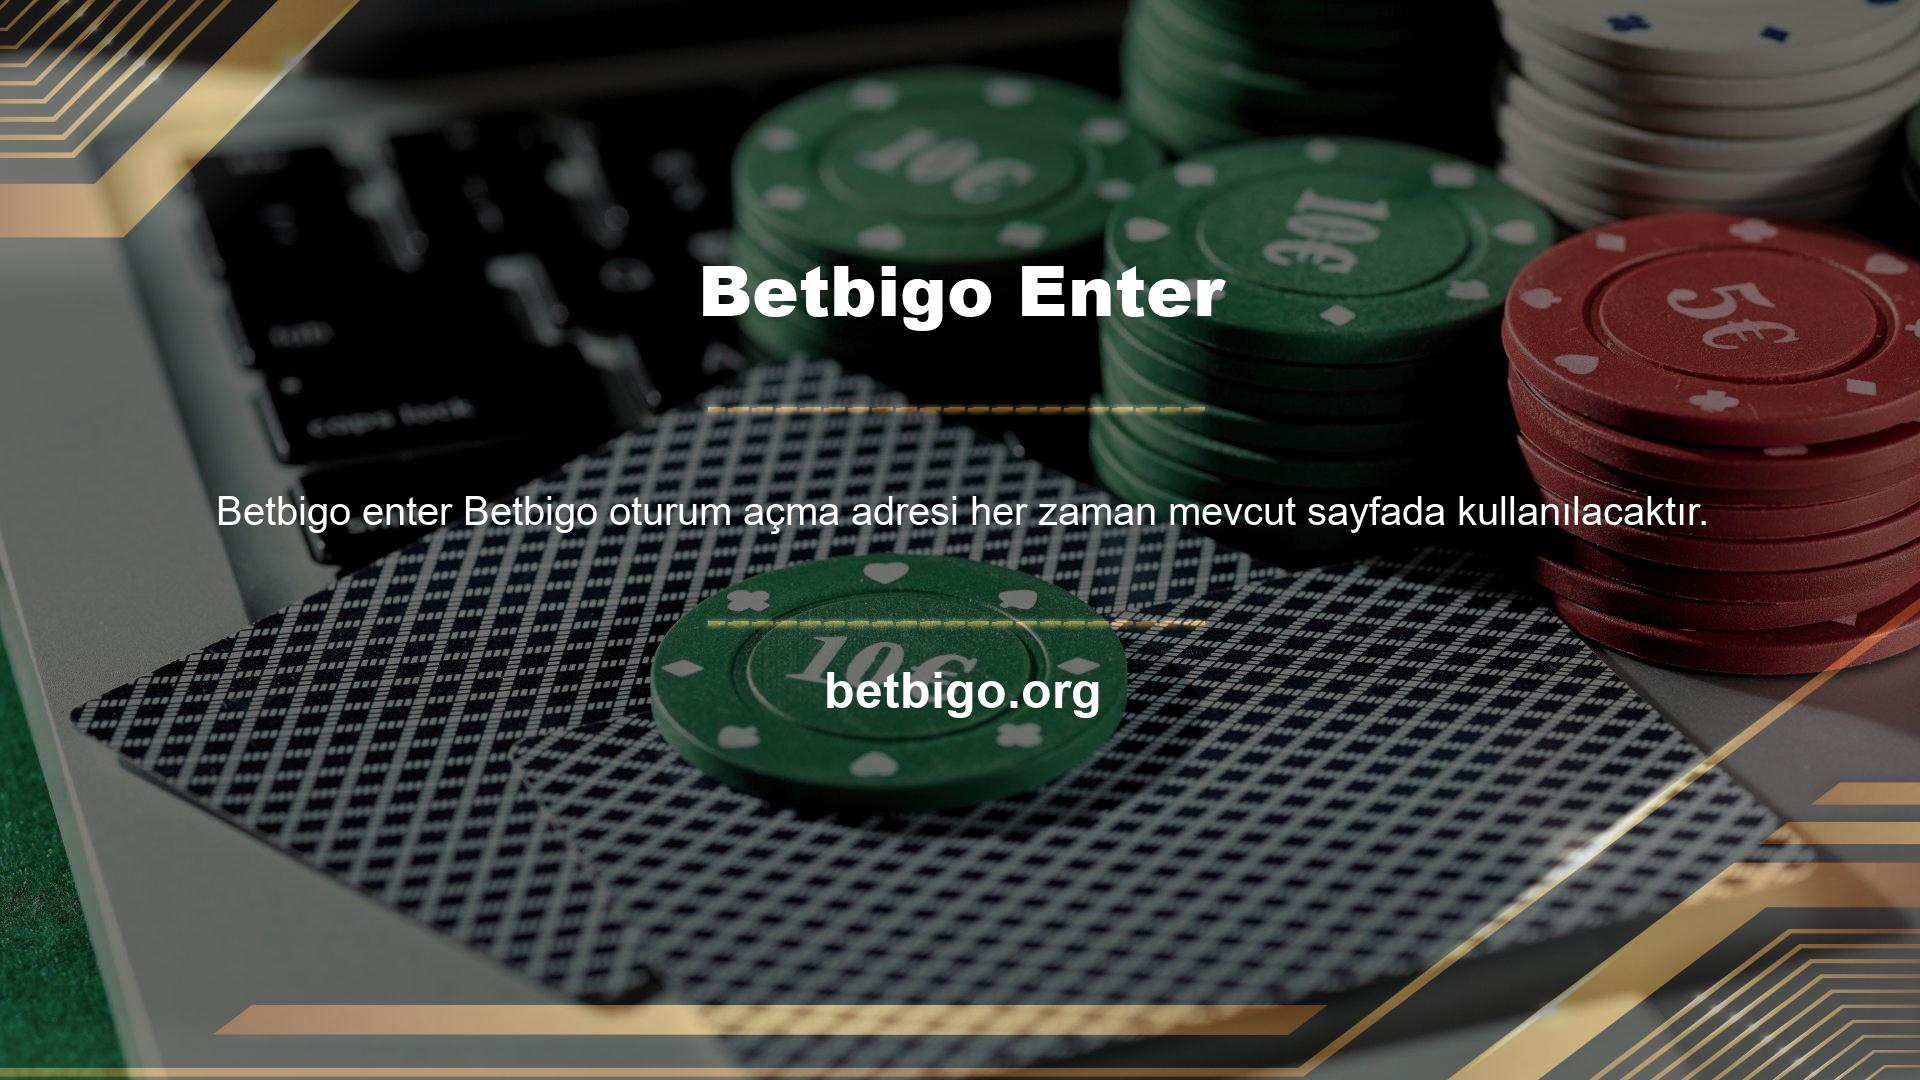 Betbigo köklü bir canlı bahis şirketidir